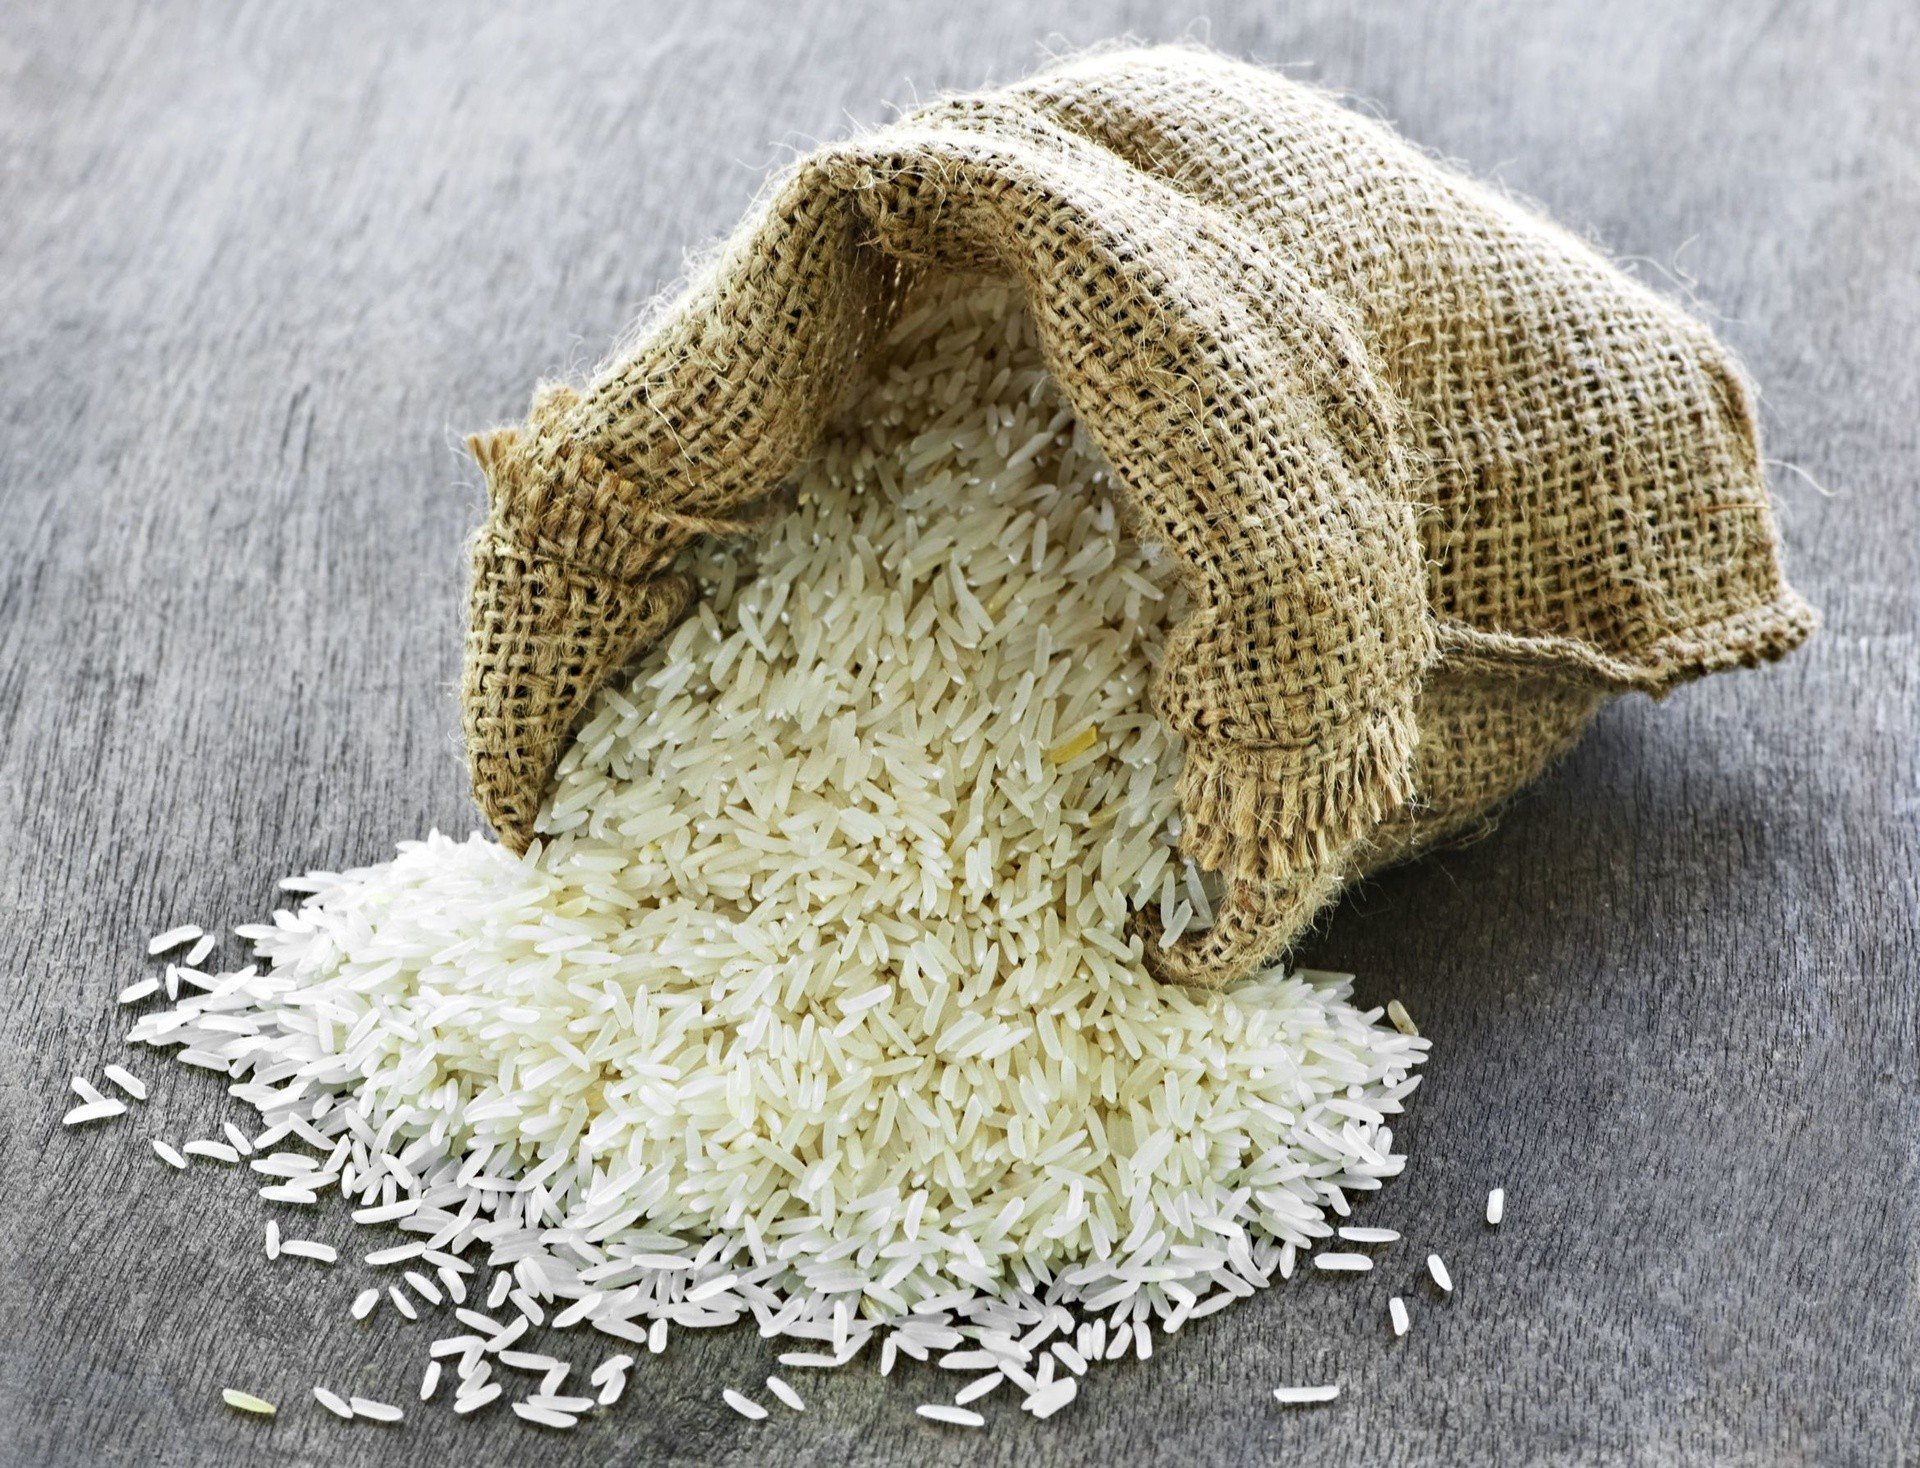 Ryż – kalorie, właściwości i korzyści zdrowotne. Ryż do sushi, ryż brązowy,  biały i inne rodzaje tego produktu. Jak ugotować ryż? | Strona Zdrowia